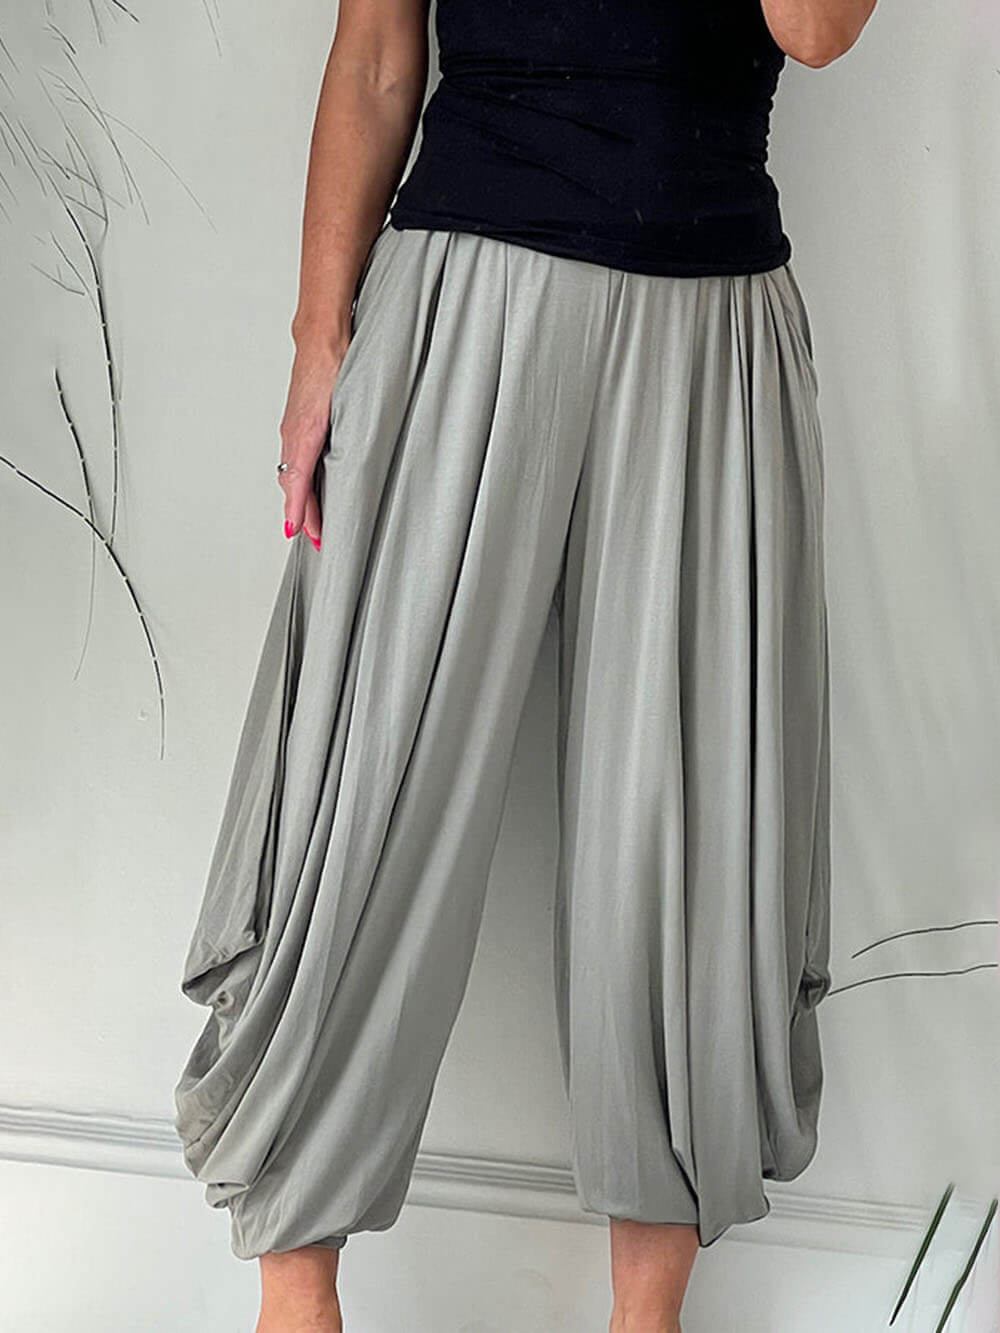 Harem Style løse bukser med elastik i taljen